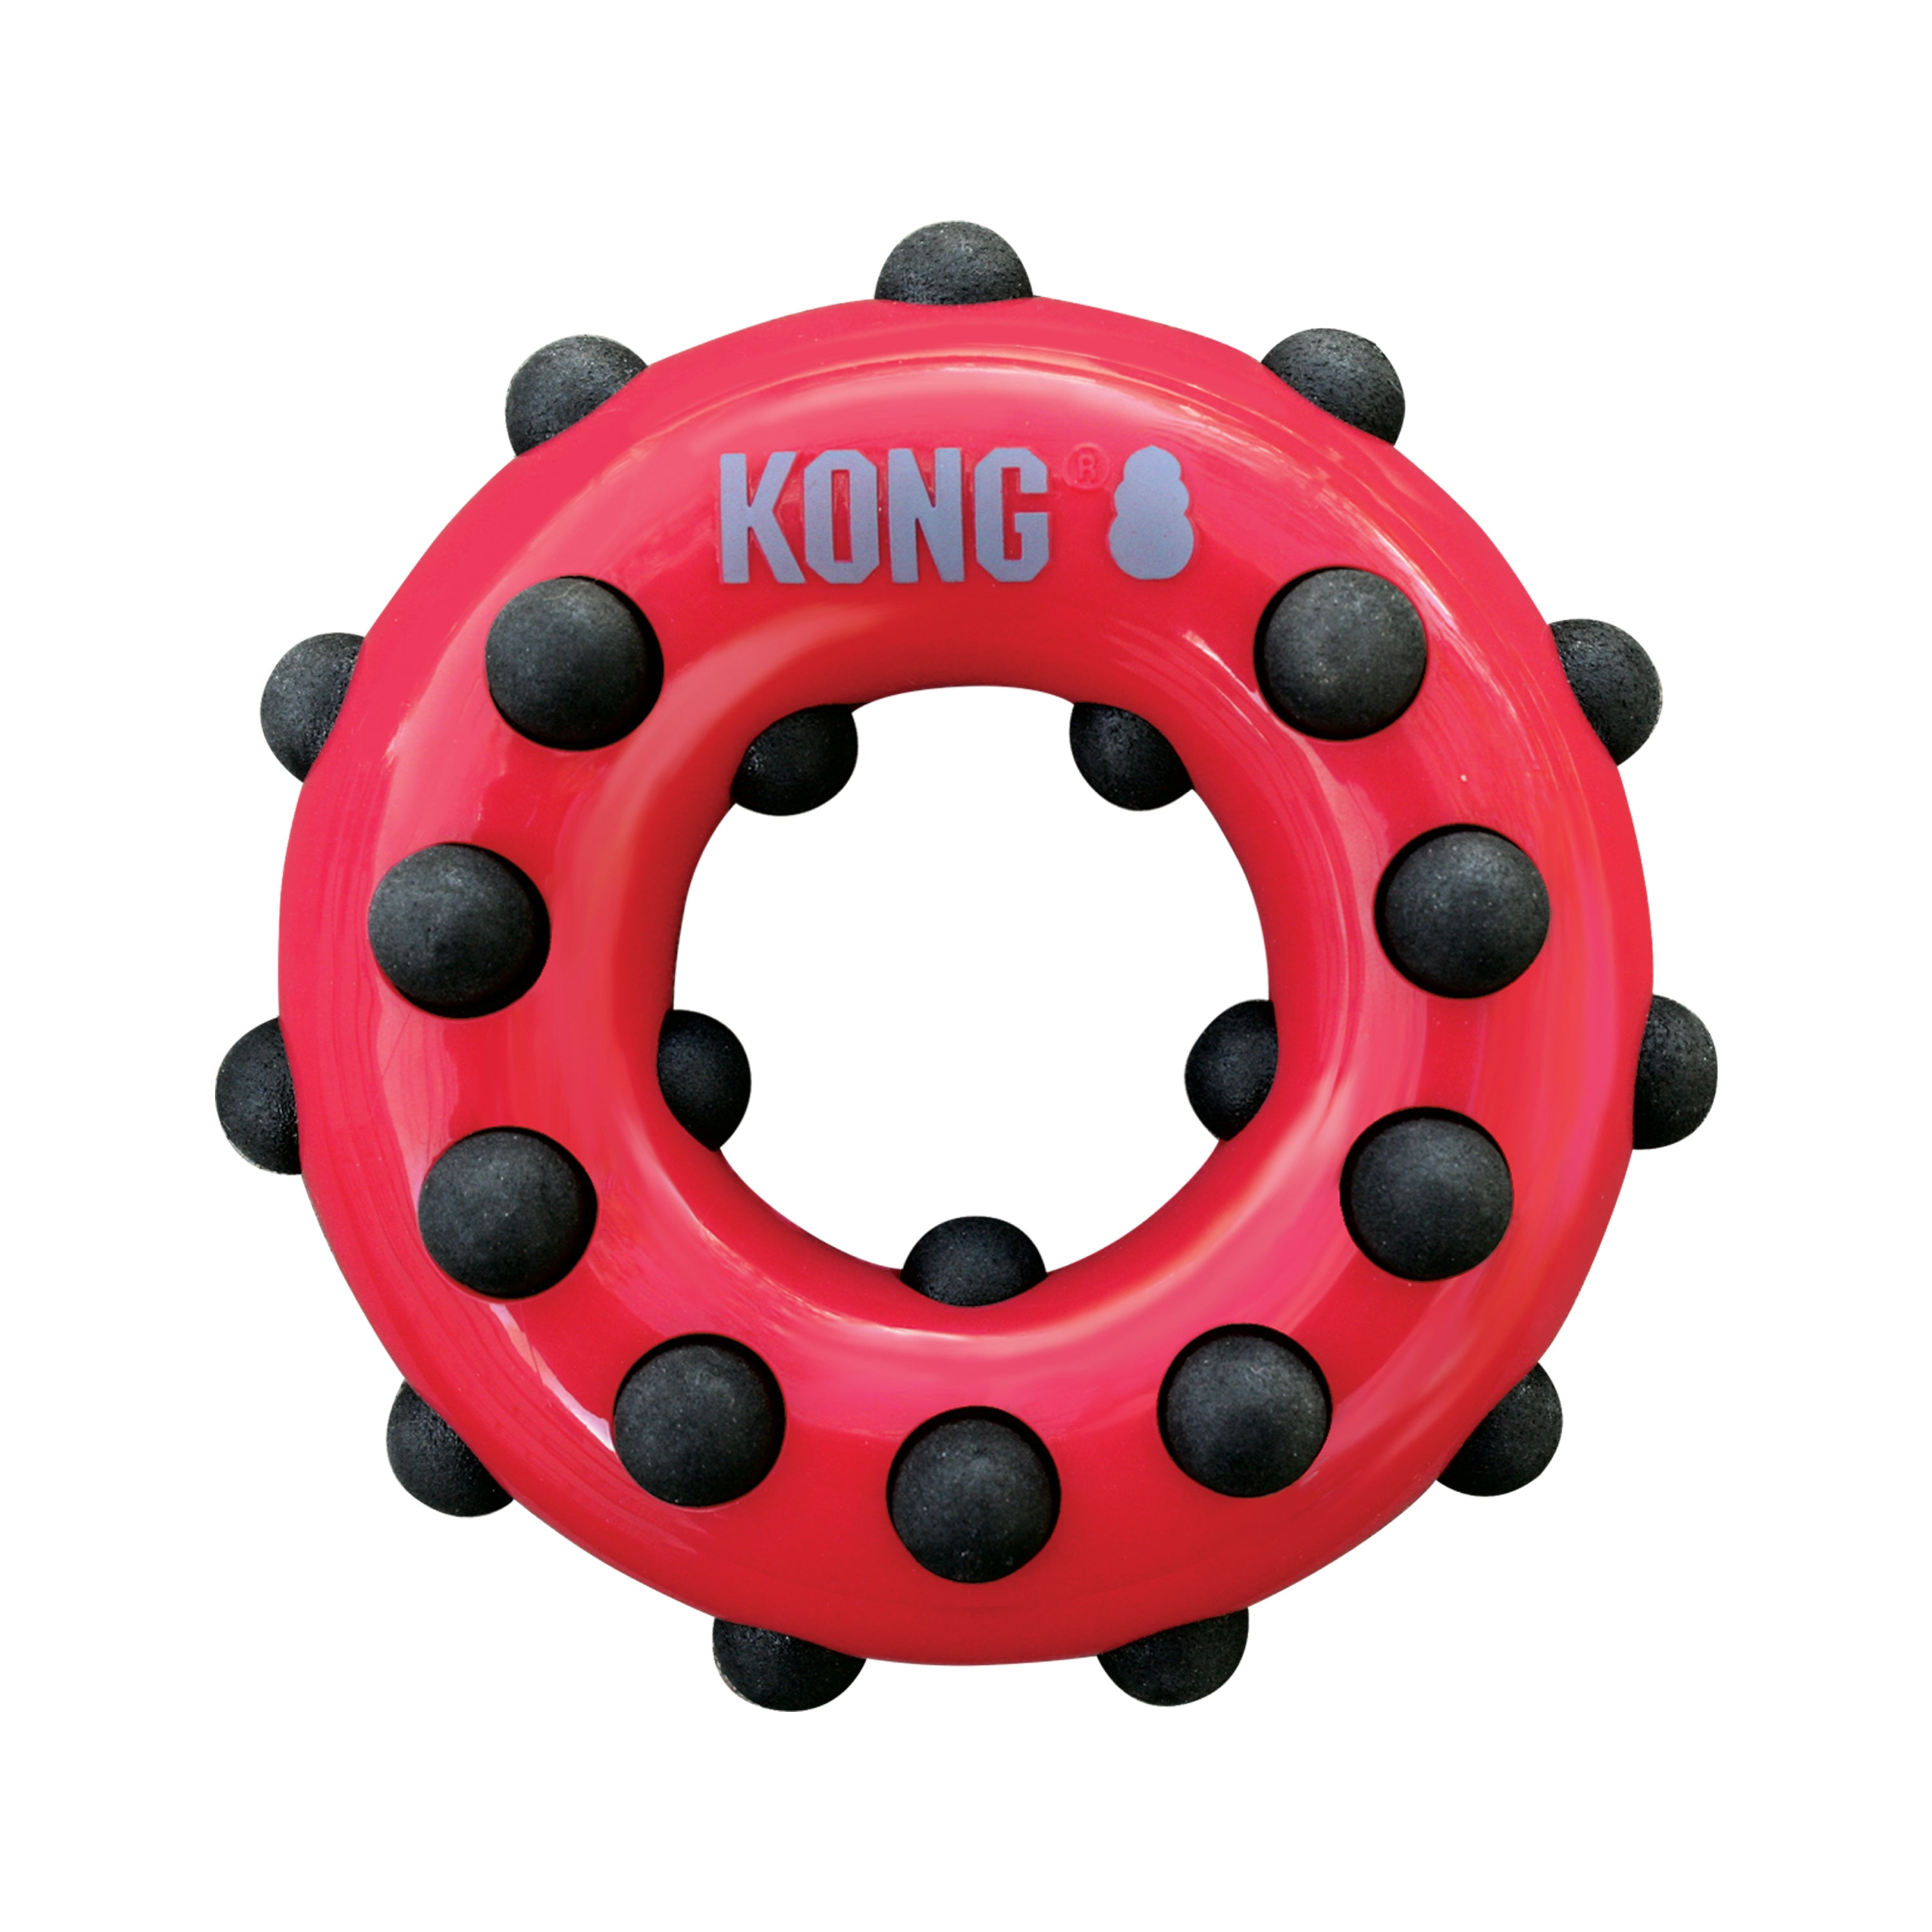 Kong Dotz Circle Small